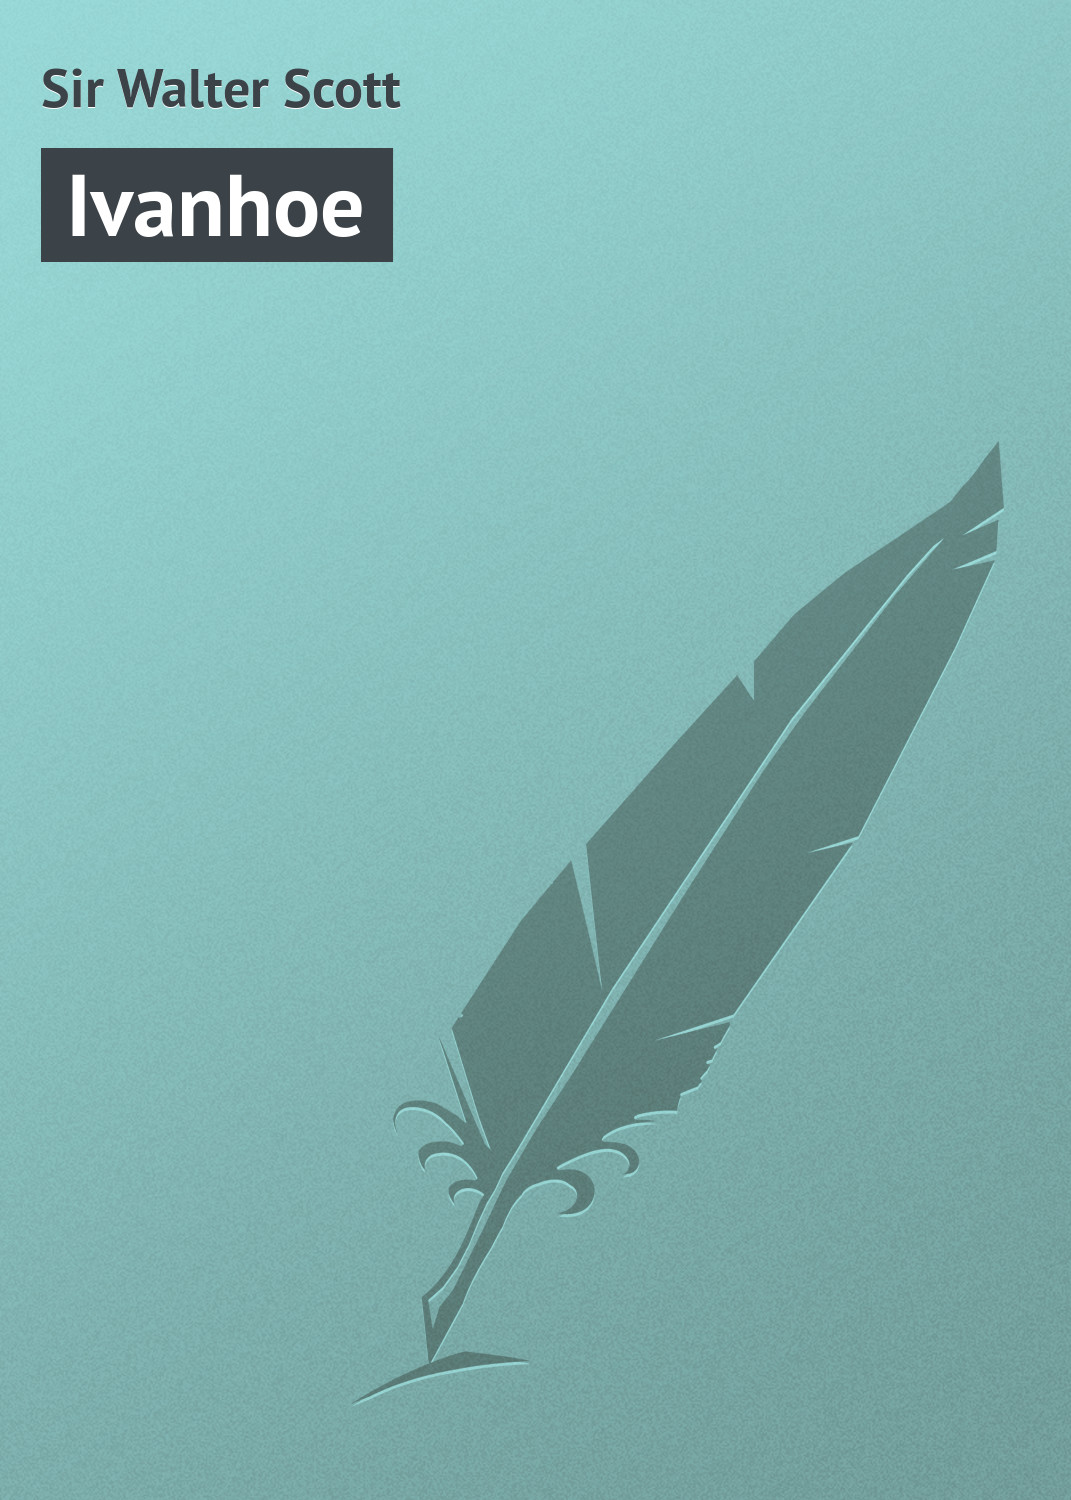 Книга Ivanhoe из серии , созданная Sir Walter, может относится к жанру Зарубежная старинная литература, Зарубежная классика. Стоимость электронной книги Ivanhoe с идентификатором 21103590 составляет 5.99 руб.